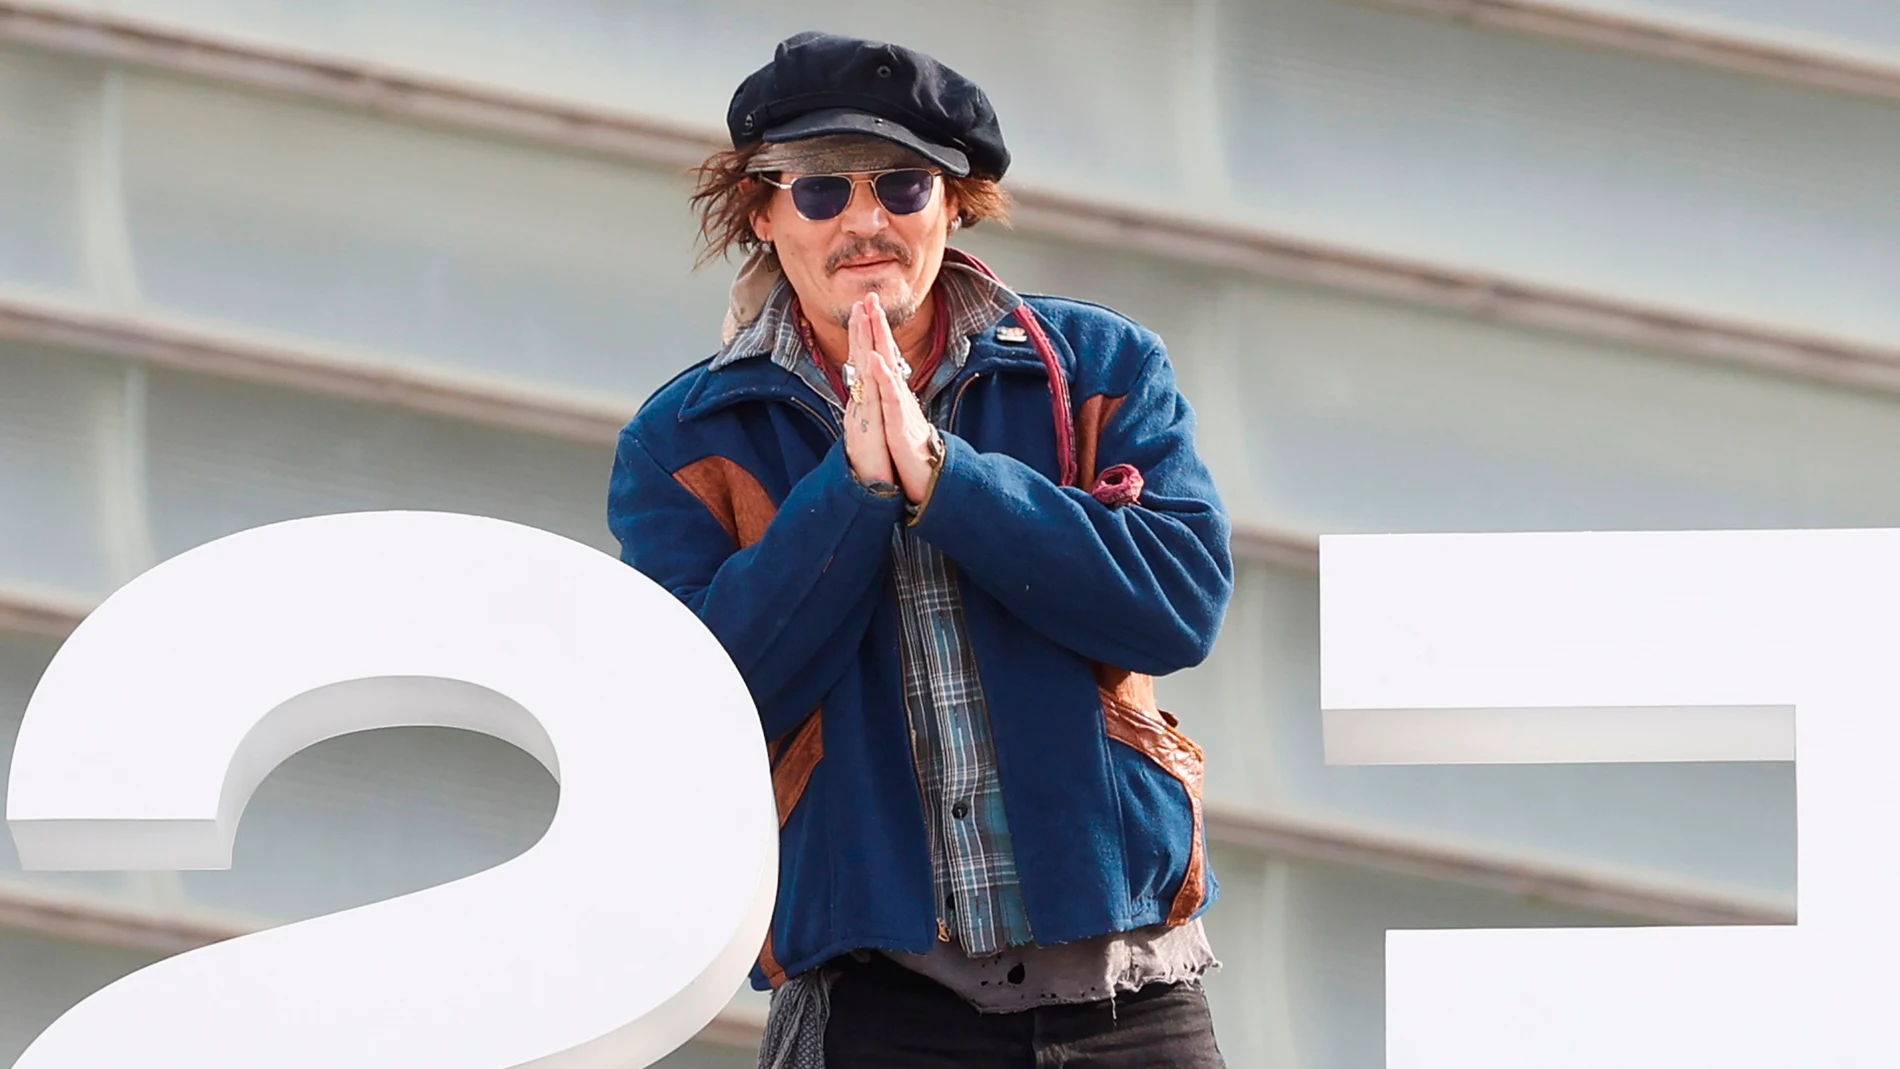 GRAFCAV8546. SAN SEBASTIÁN, 22/09/2021.- El actor estadounidense Johnny Depp posa este miércoles en la 69 edición del Festival de Cine de San Sebastián, donde esta noche recibirá el Premio Donostia de la 96 edición del certamen. EFE/Javier Etxezarreta